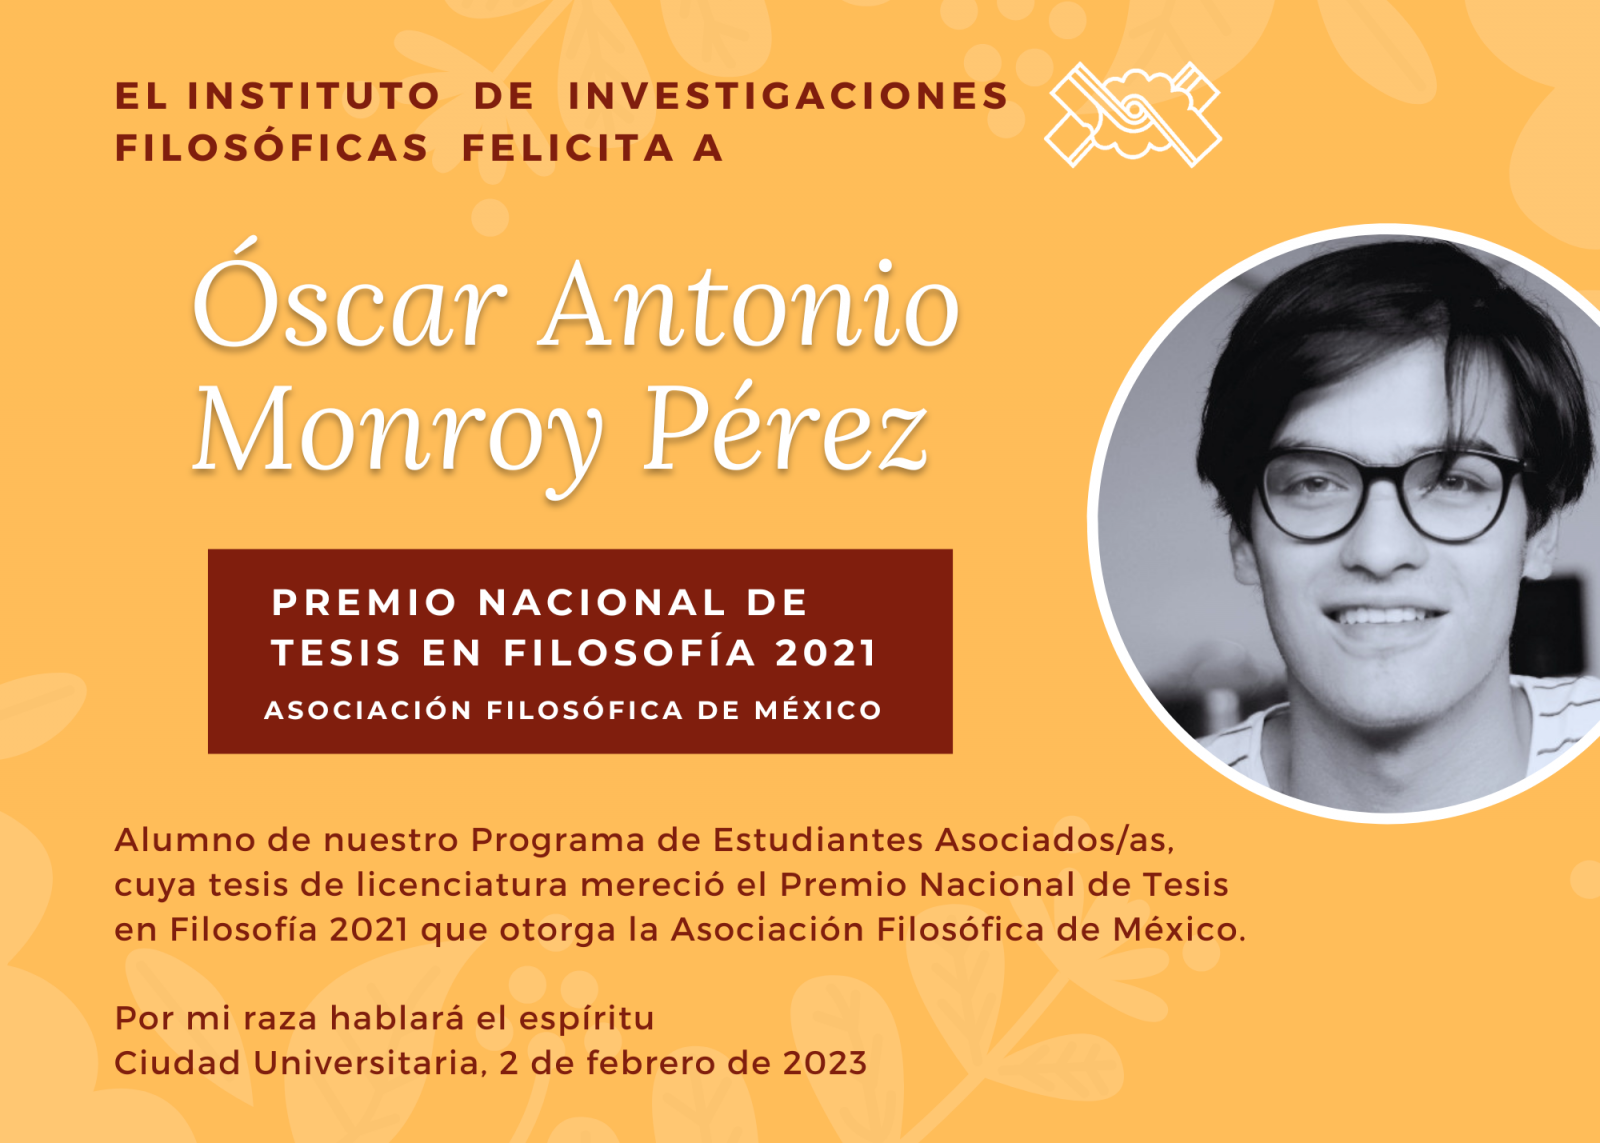 El Instituto de Investigaciones Filosóficas felicita a   Óscar Antonio Monroy Pérez  alumno de nuestro Programa de Estudiantes Asociados/as, cuya tesis de licenciatura mereció el Premio Nacional de Tesis en Filosofía 2021 que otorga la Asociación Filosófica de México.